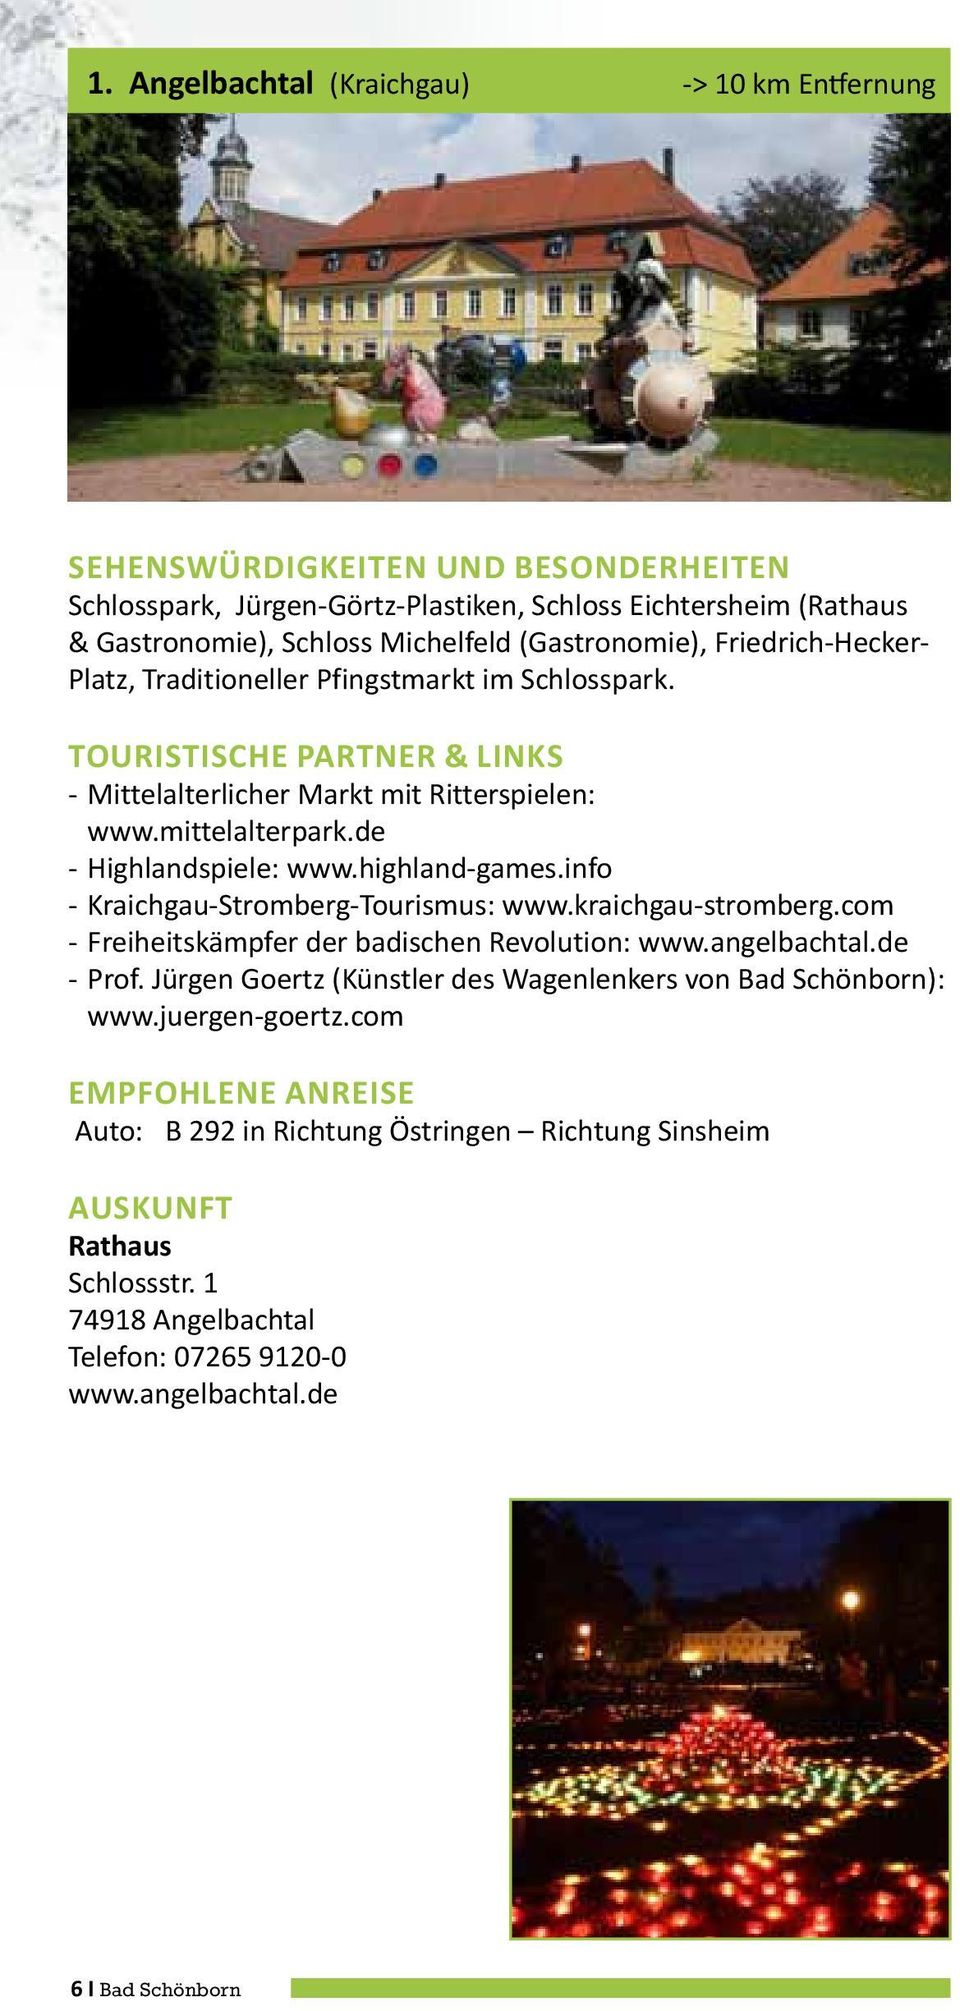 info - Kraichgau-Stromberg-Tourismus: www.kraichgau-stromberg.com - Freiheitskämpfer der badischen Revolution: www.angelbachtal.de - Prof.